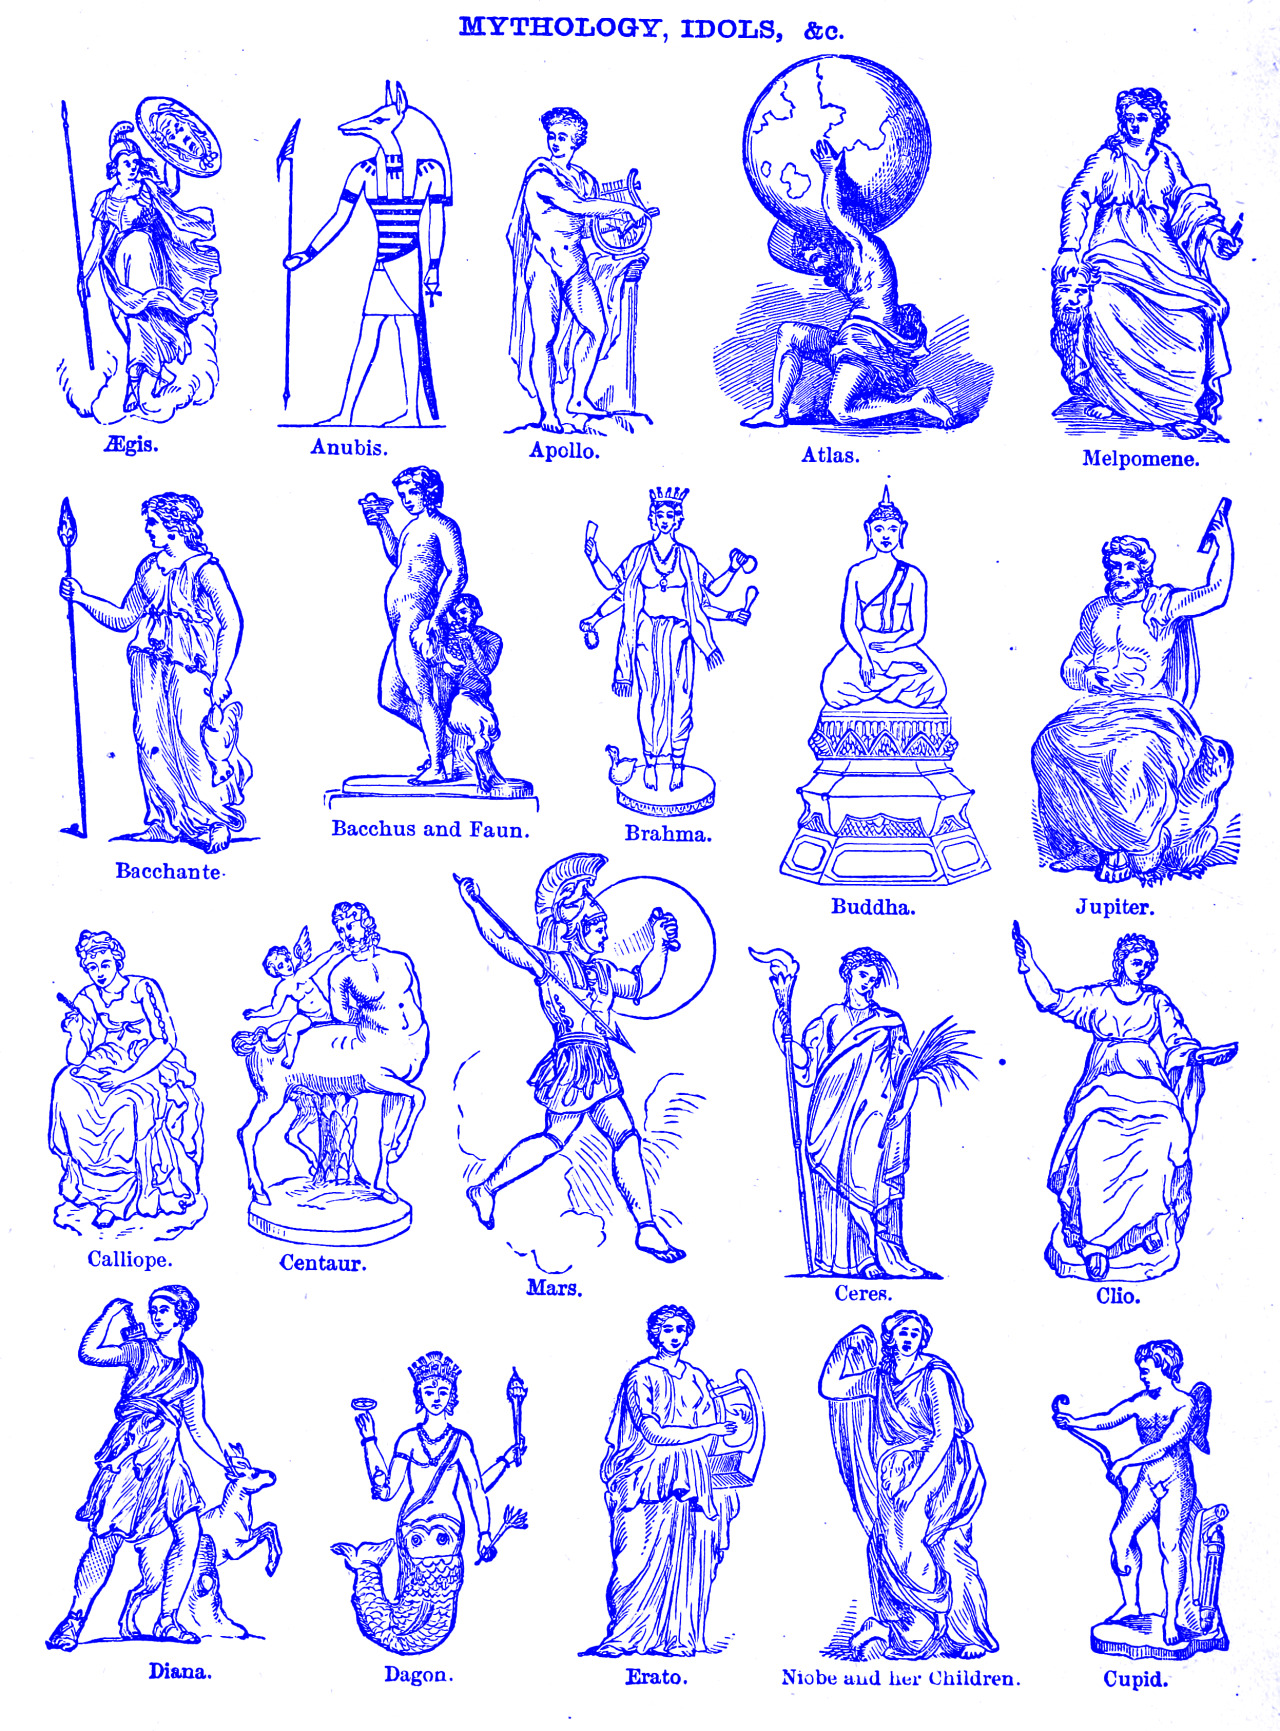 Mythology, idols etc. A dictionary of the English language. 1895.Internet Archive #collection#illustration#processed image#mythology#anubis#atlas#centaur#nemfrog#1895#19th century